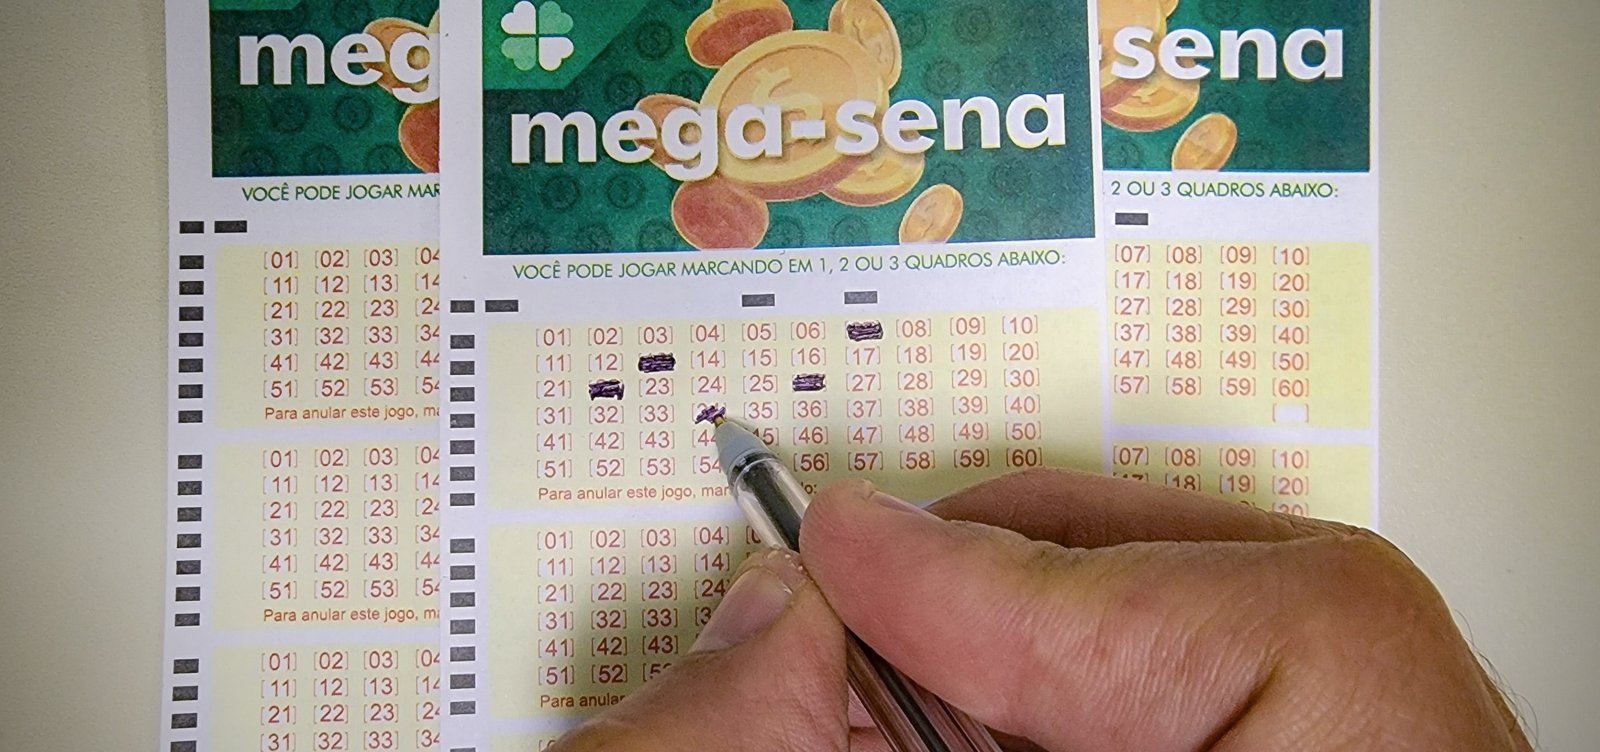 Somadas, três apostas baianas faturam R$ 165 mil no sorteio da Mega-Sena nesta terça-feira 